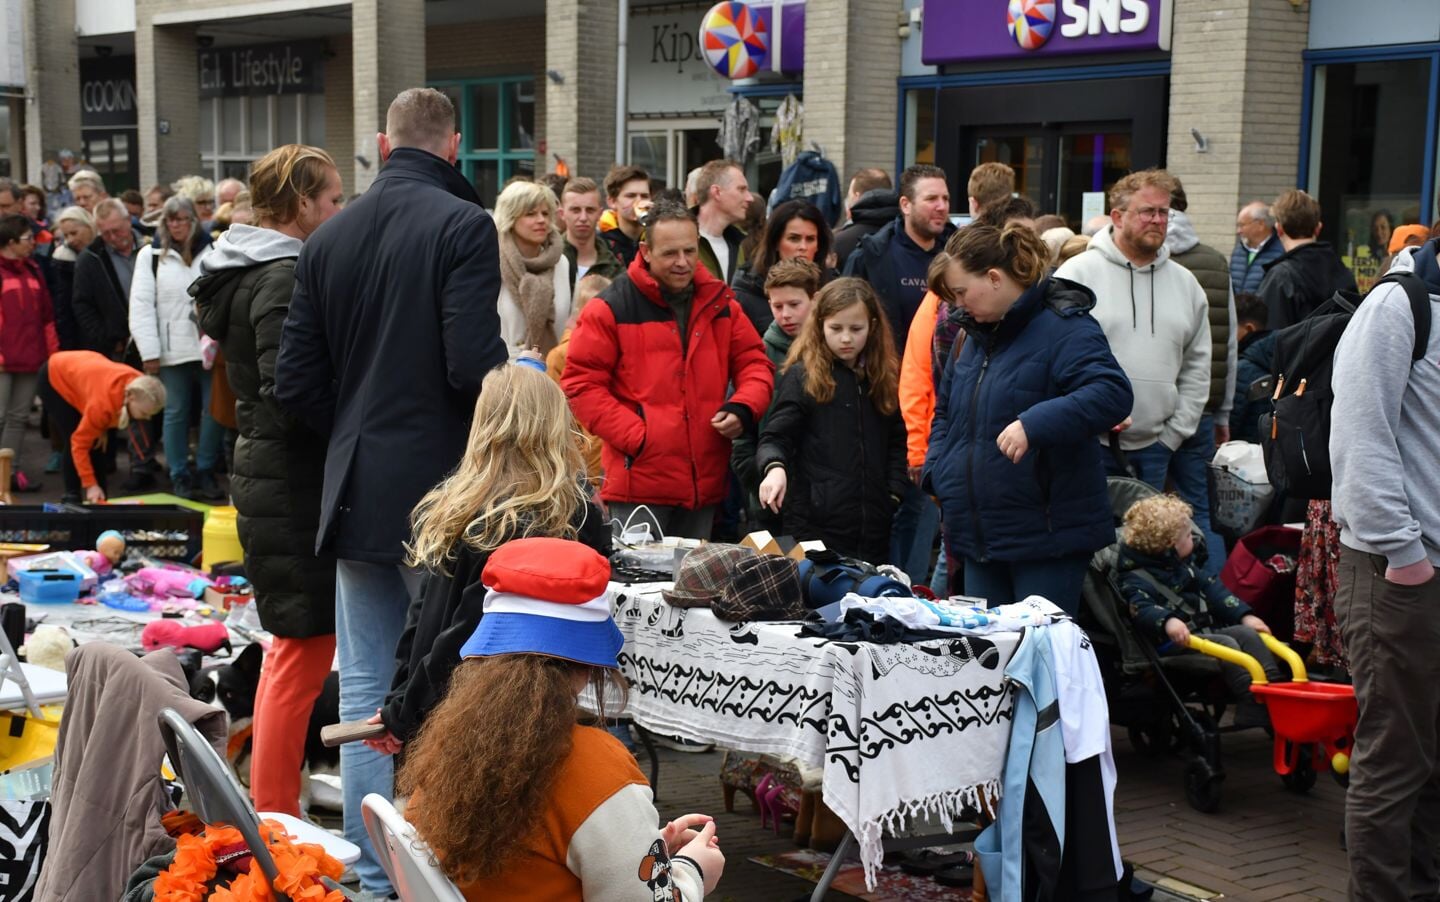 Vrijmarkt in centrum Heerenveen trekt weer veel publiek
